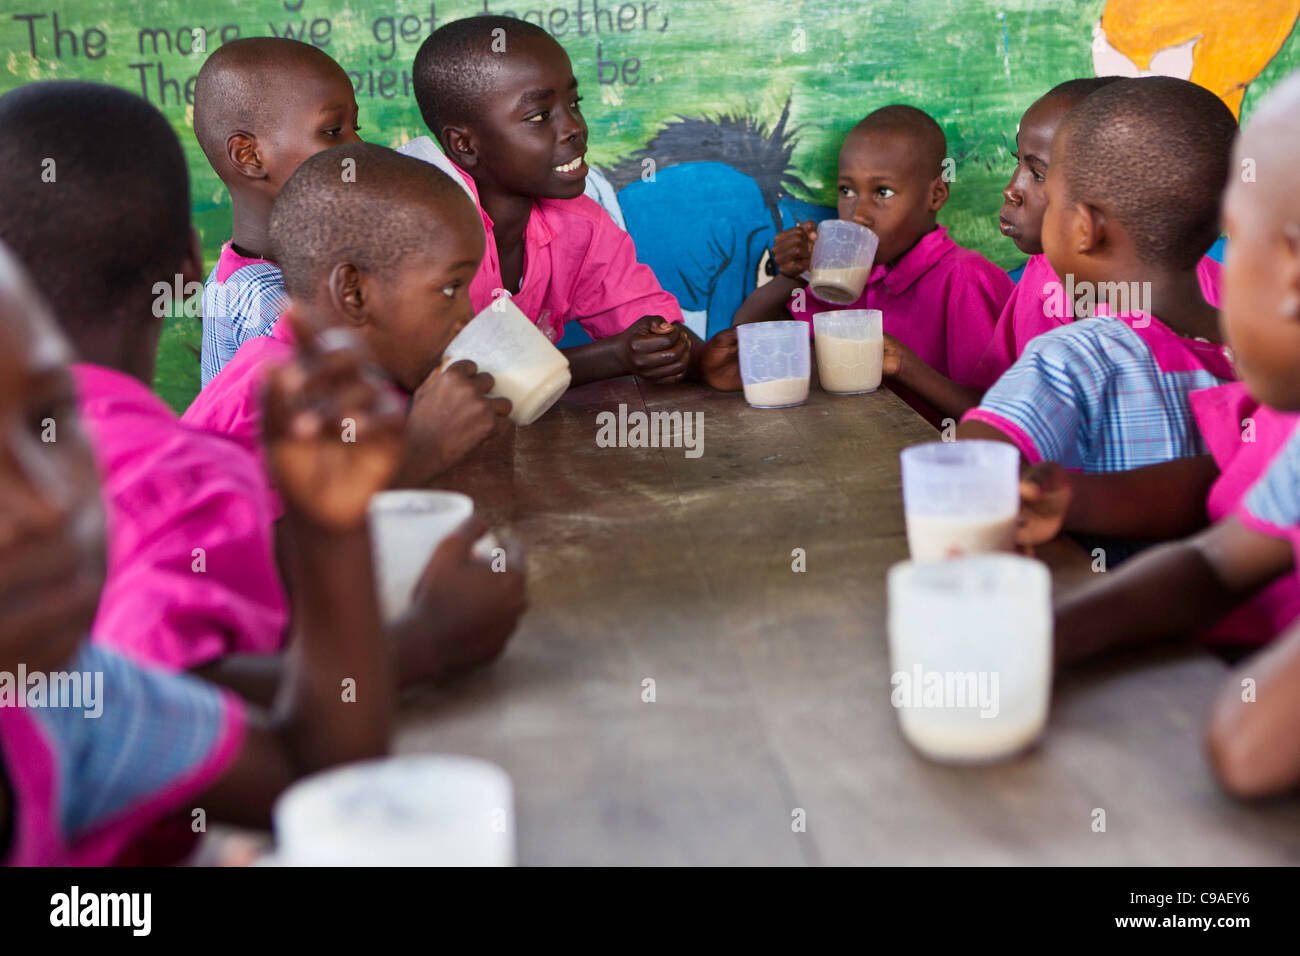 Children from the Wema centre in Mombassa, Kenya enjoy breakfast. Wema provide a rehabilitation program for street children. Stock Photo